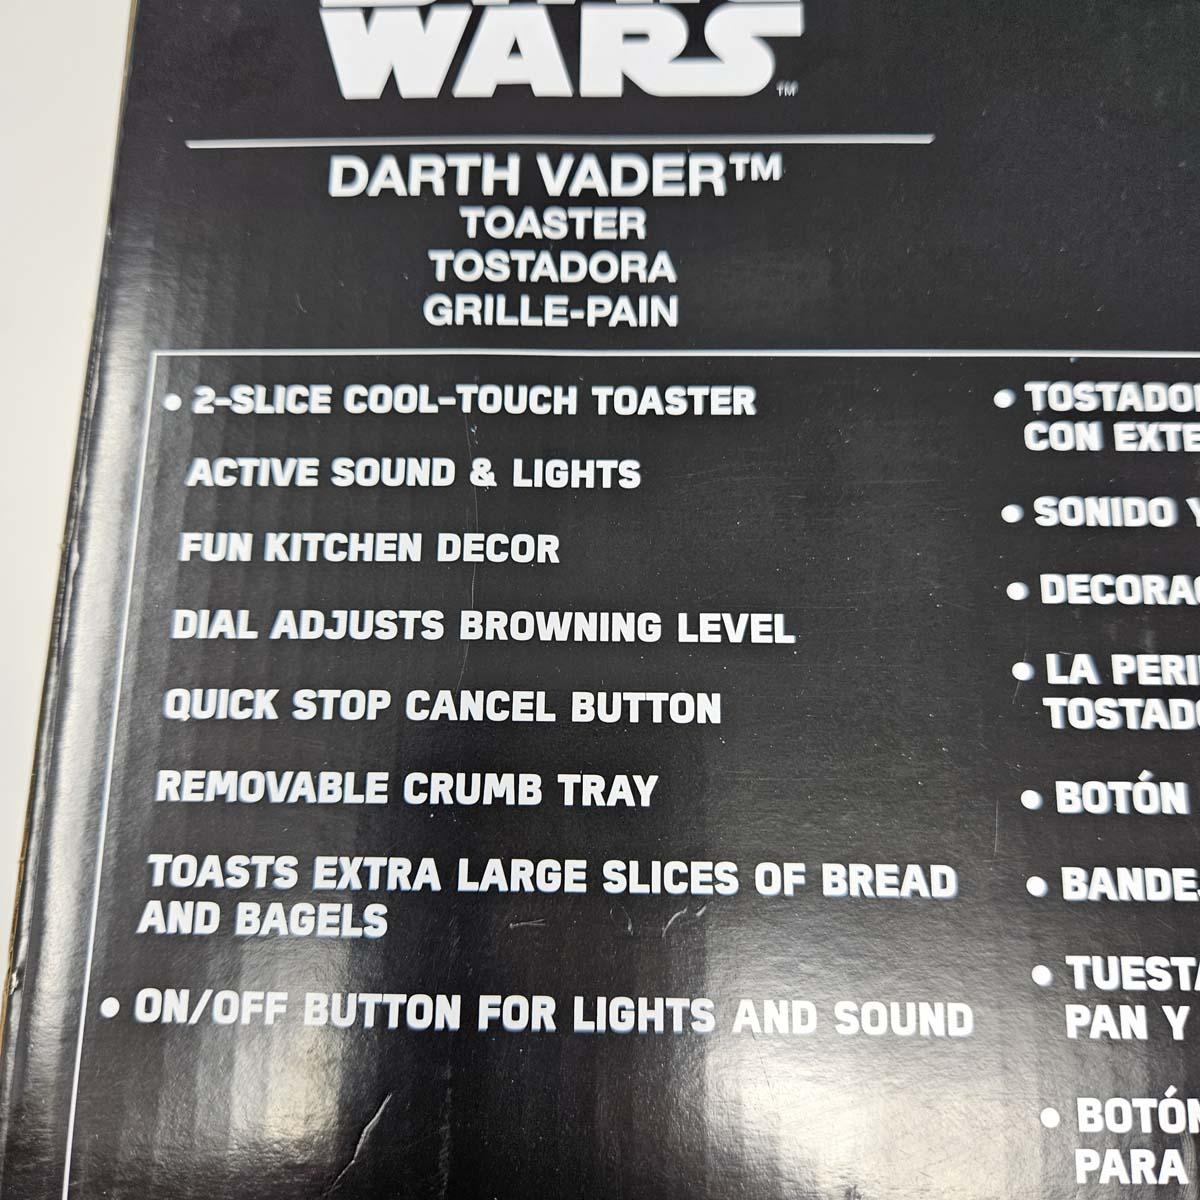 Star Wars Darth Vader Disney Toaster - NEW